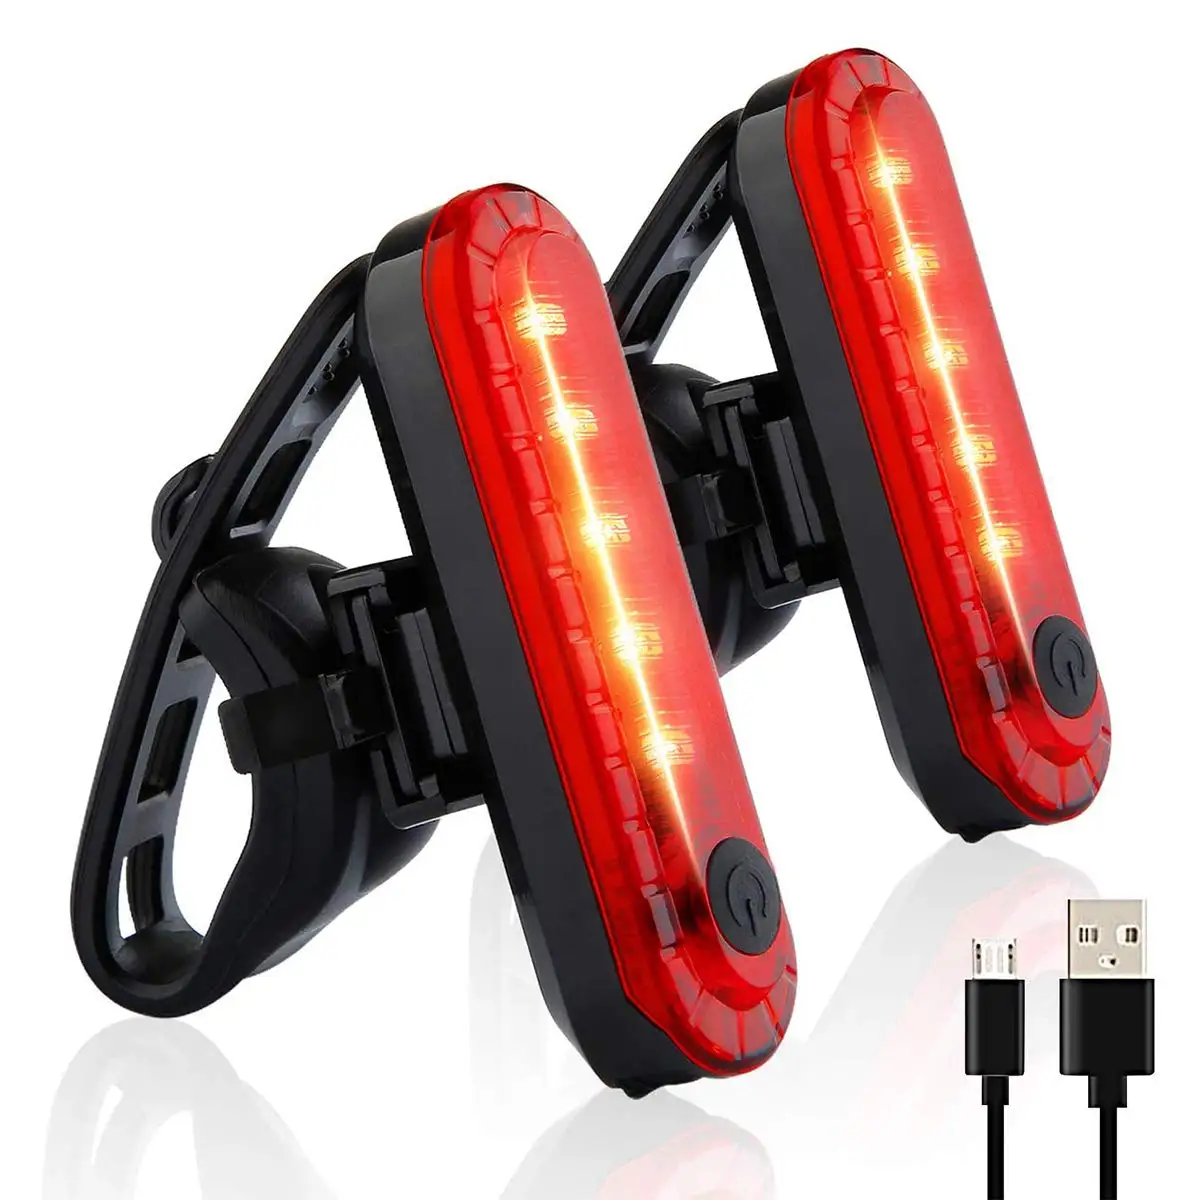 

Задние фонари для велосипеда INBIKE, светодиодный задний фонарь красного цвета, зарядка через USB, аксессуары для безопасной езды в ночное время